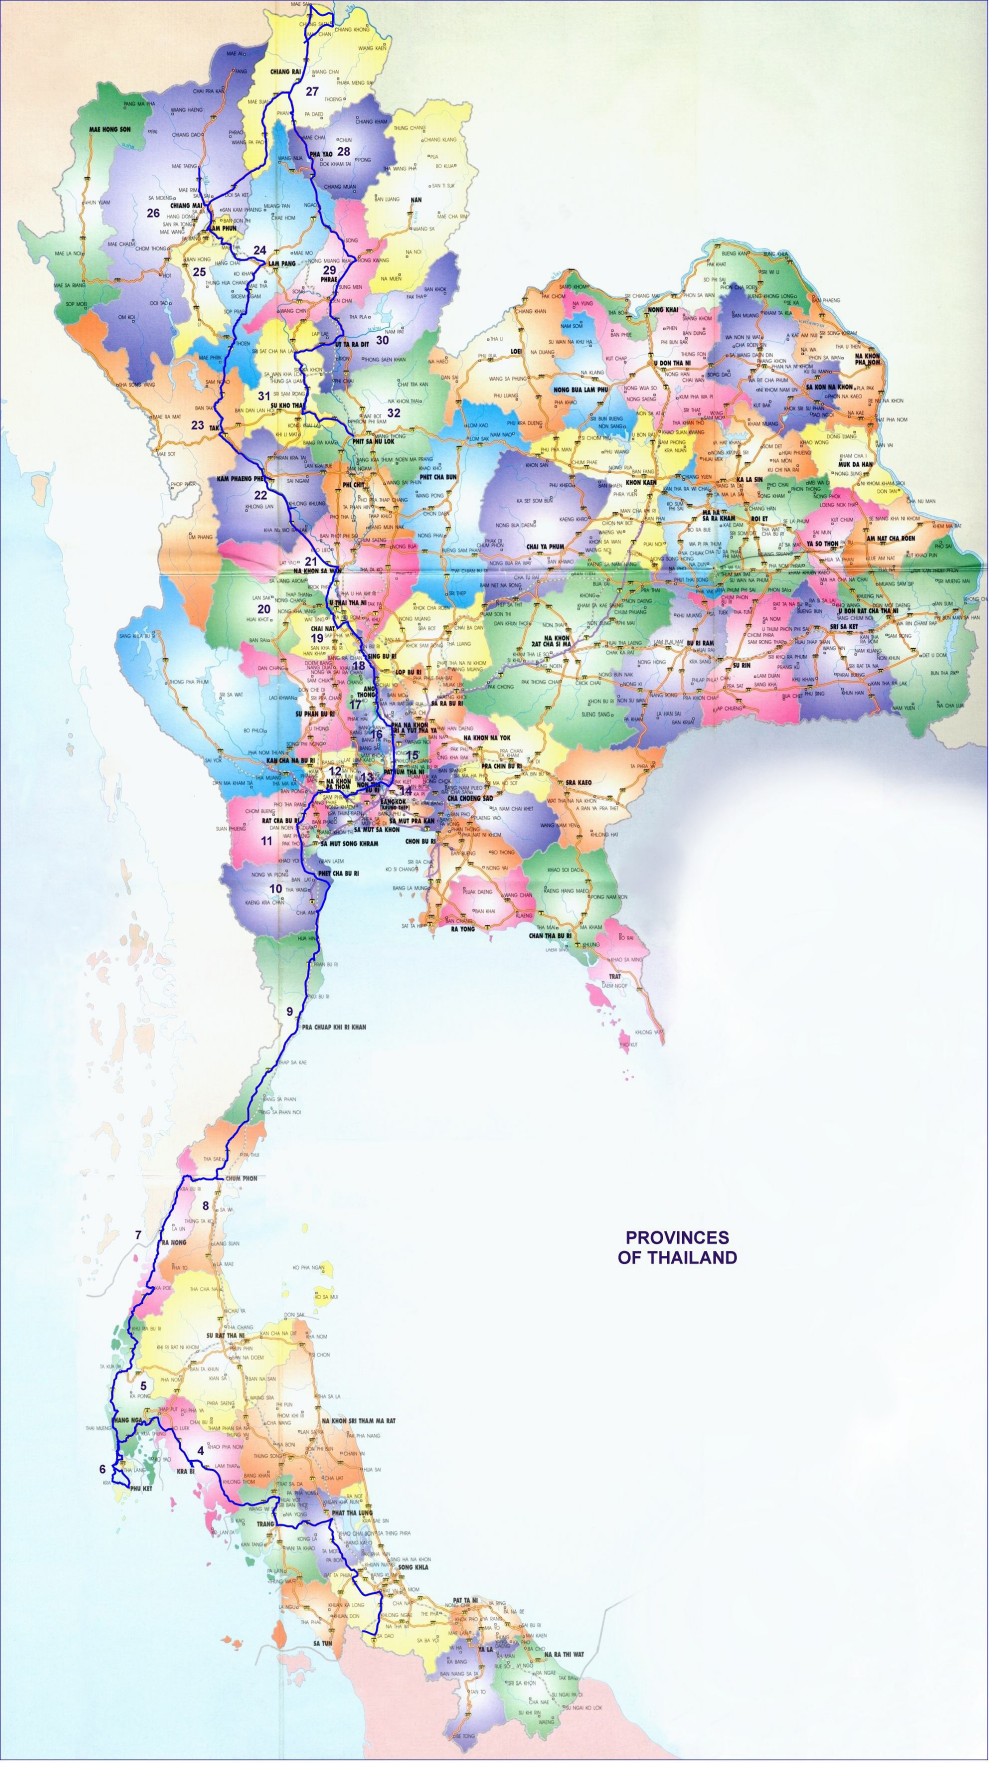 Bản đồ hành chính Thái Lan mới nhất năm 2024 có khổ lớn, giúp cho bạn có thể dễ dàng xem được chi tiết các thông tin như hành chính, địa lý và khu vực trên toàn quốc. Bạn có thể treo tường hoặc dán trên tường để sử dụng một cách thuận tiện và đẹp mắt. Hãy xem hình ảnh liên quan để tìm hiểu về bản đồ này nhé!